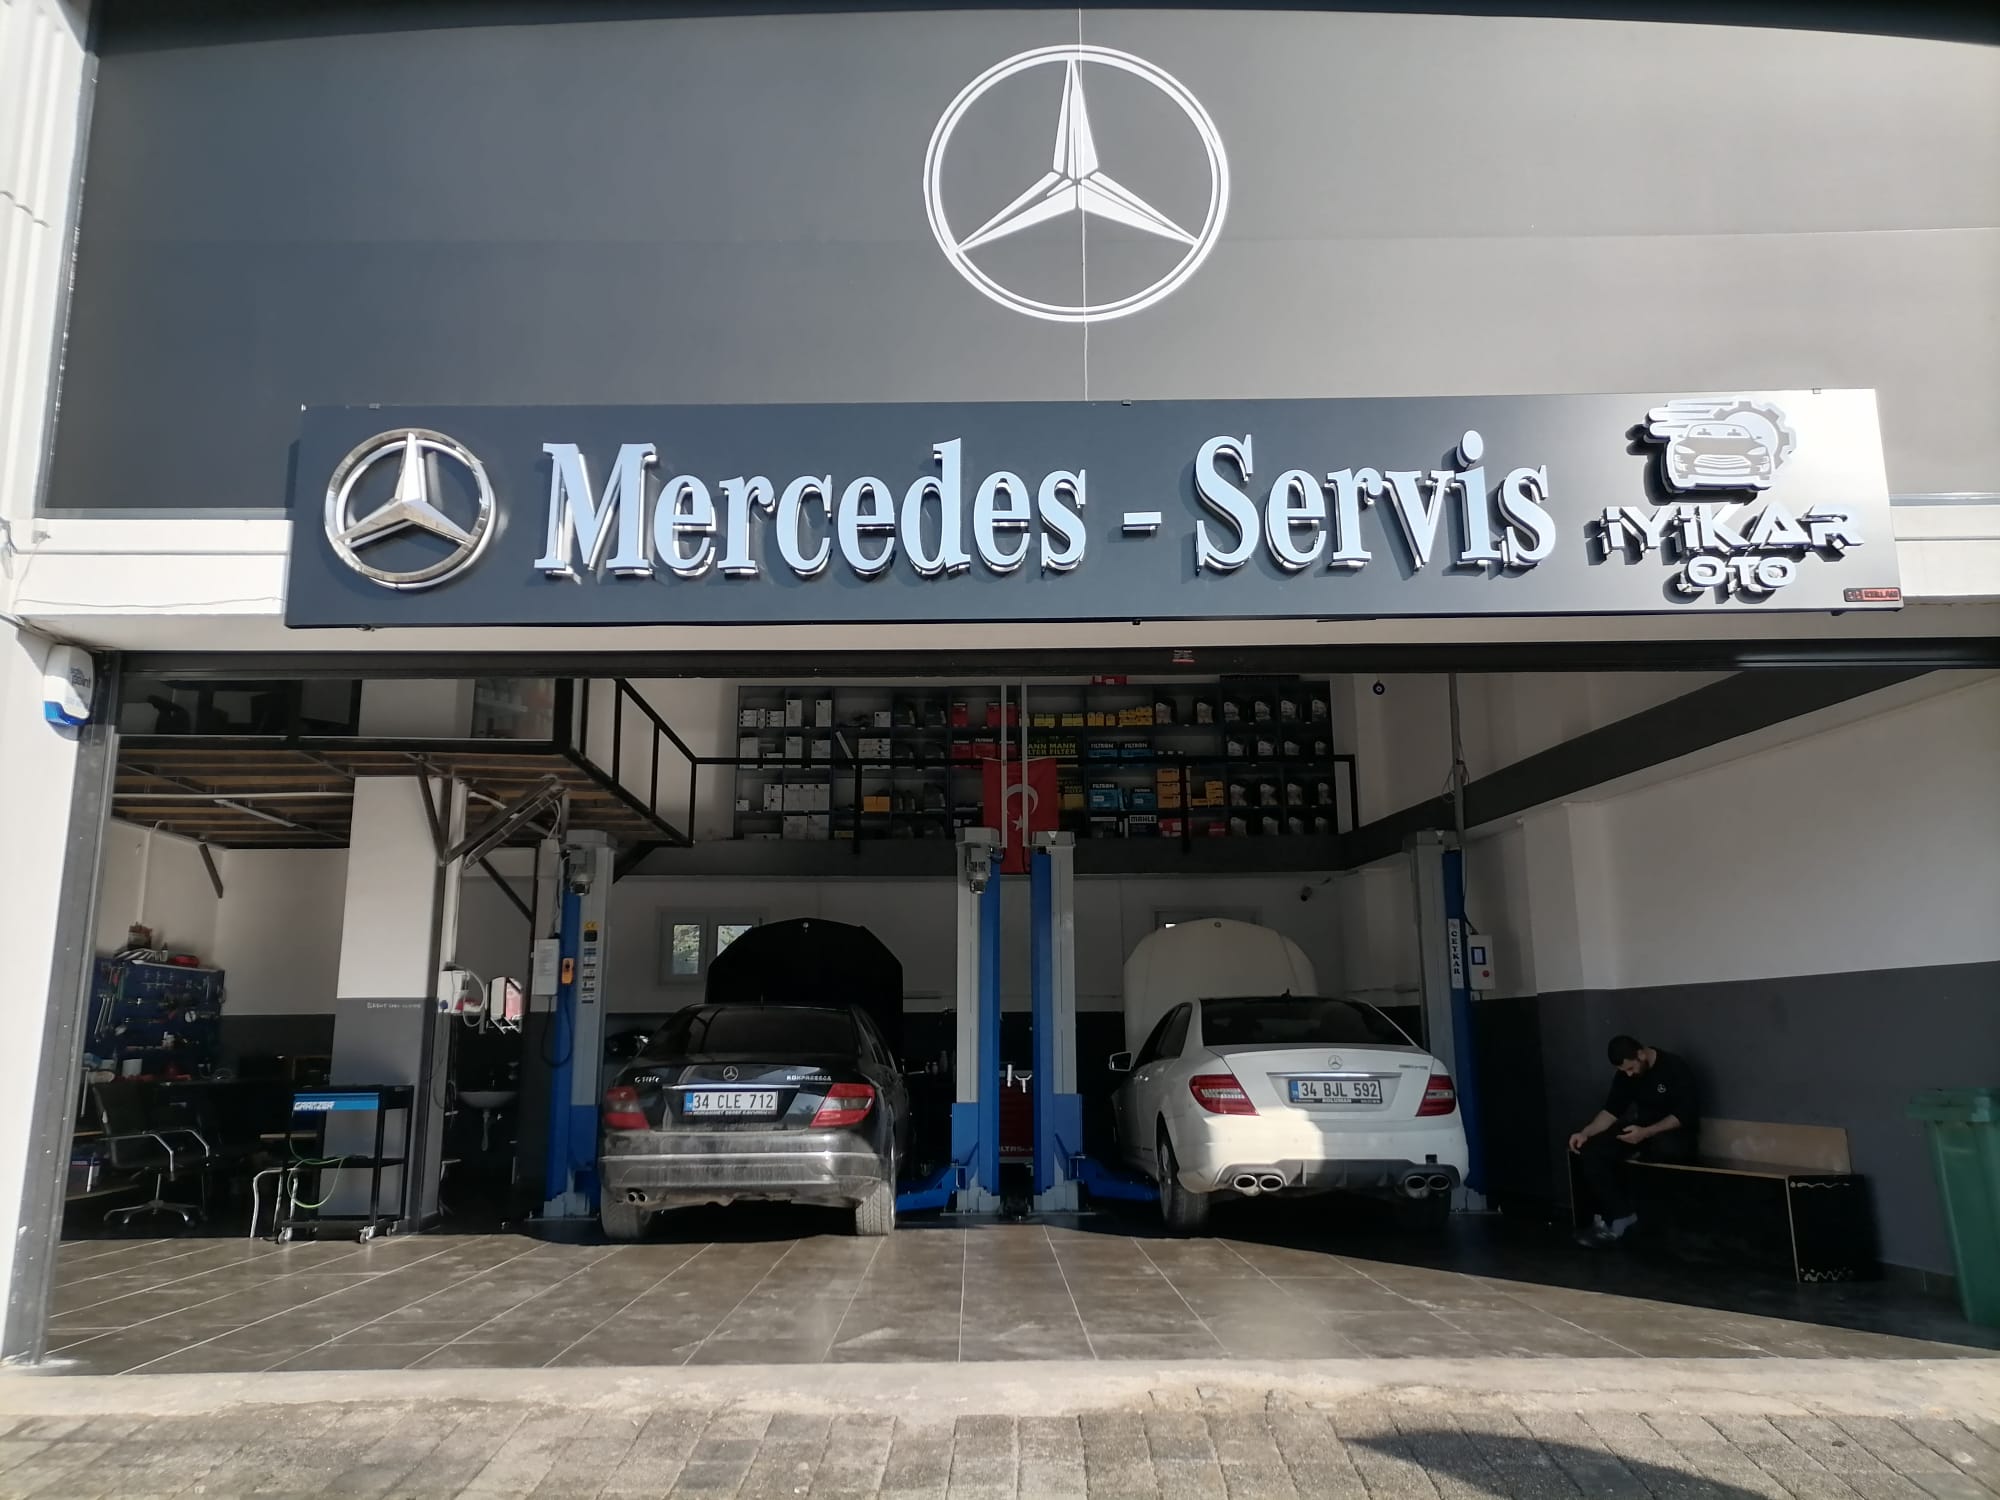 Pendik Mercedes Özel Servis İyikar Otomotiv 7-24 Yol yardım Mercedes Elektro Mekanik Sertifikalı Arıza Tesbit